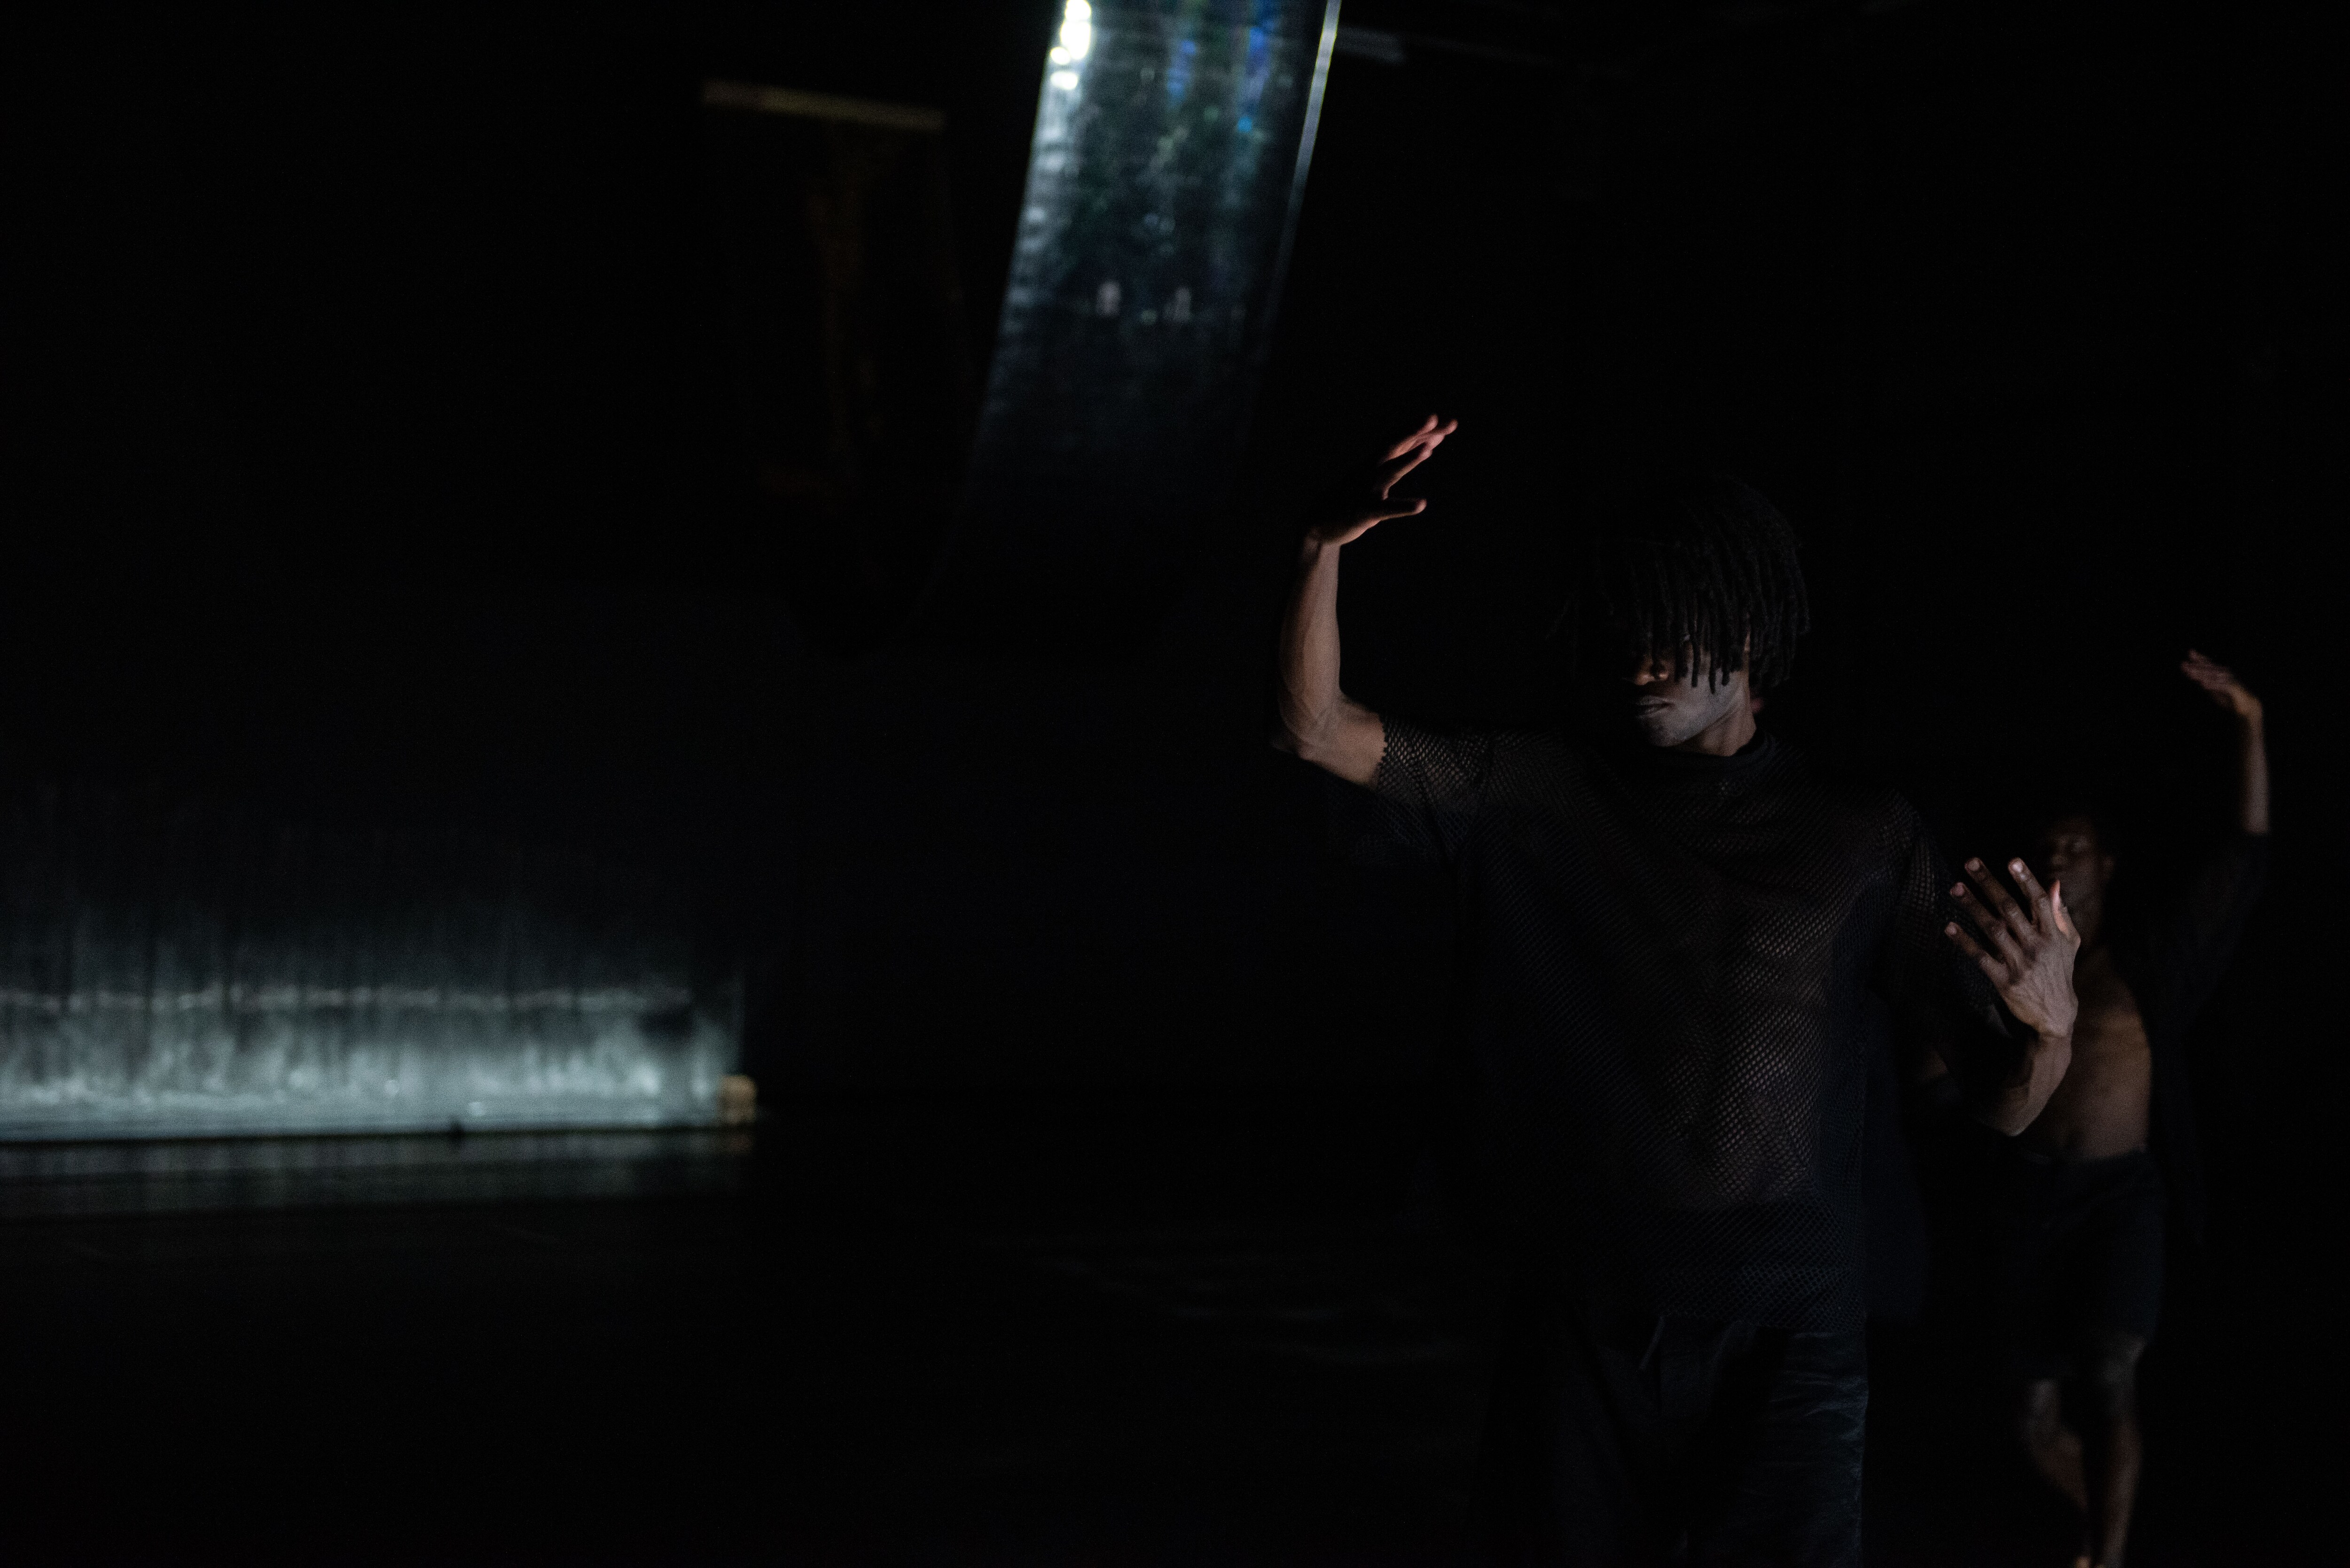 A dancer on a dark stage